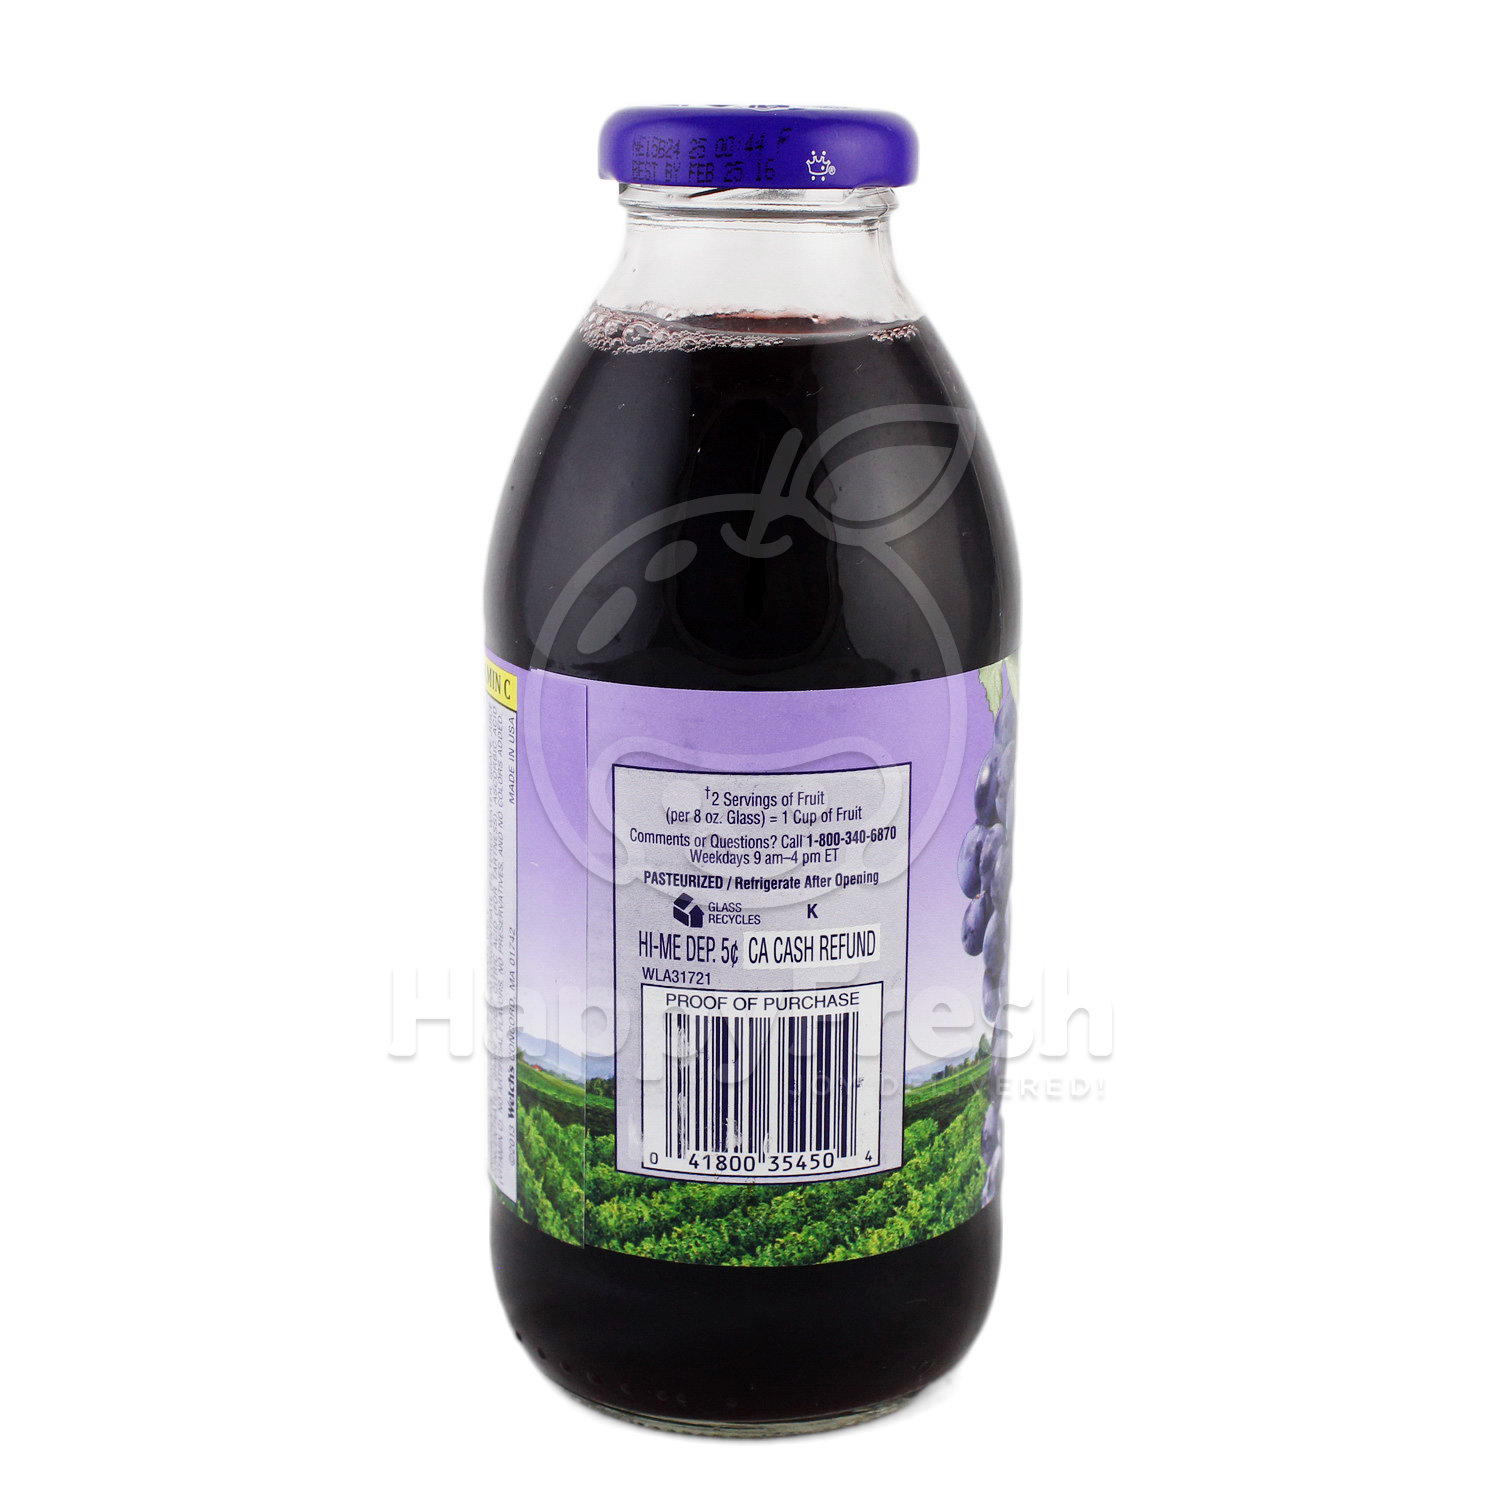 Download 330Ml Clear Glass Grape Juice Bottle : 330ml Clear Glass Grape Juice Bottle Mockup Download ...